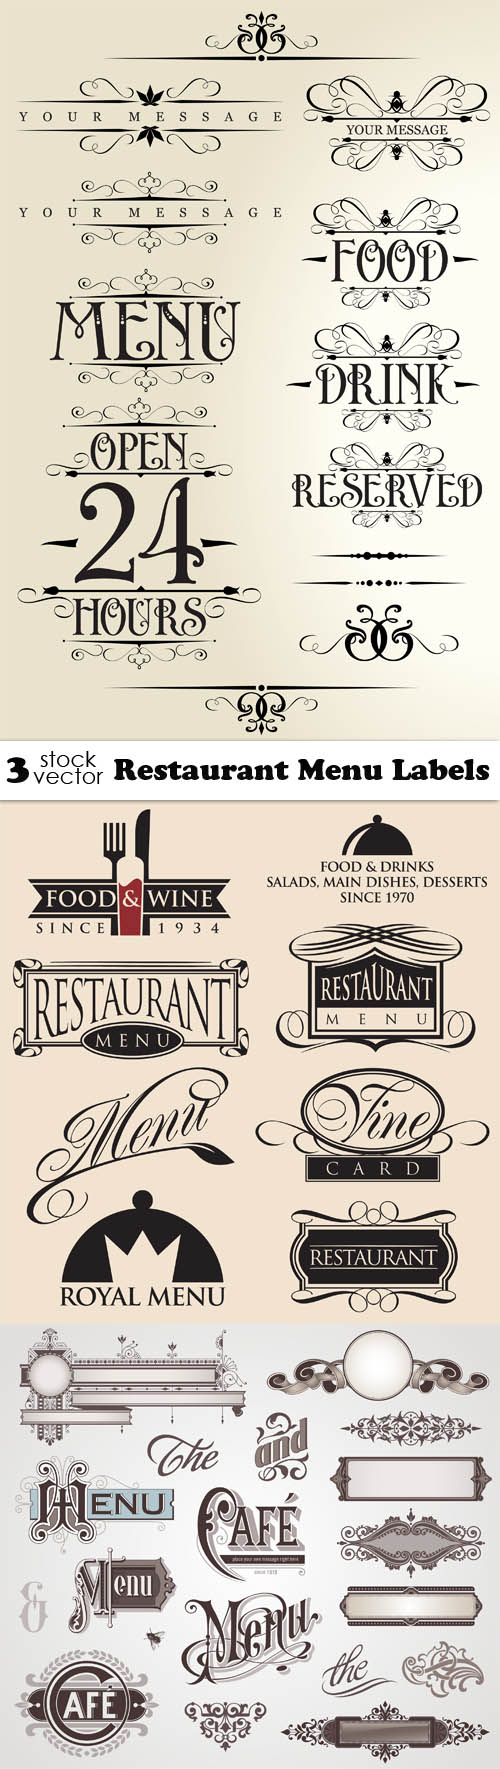 Vectors - Restaurant Menu Labels